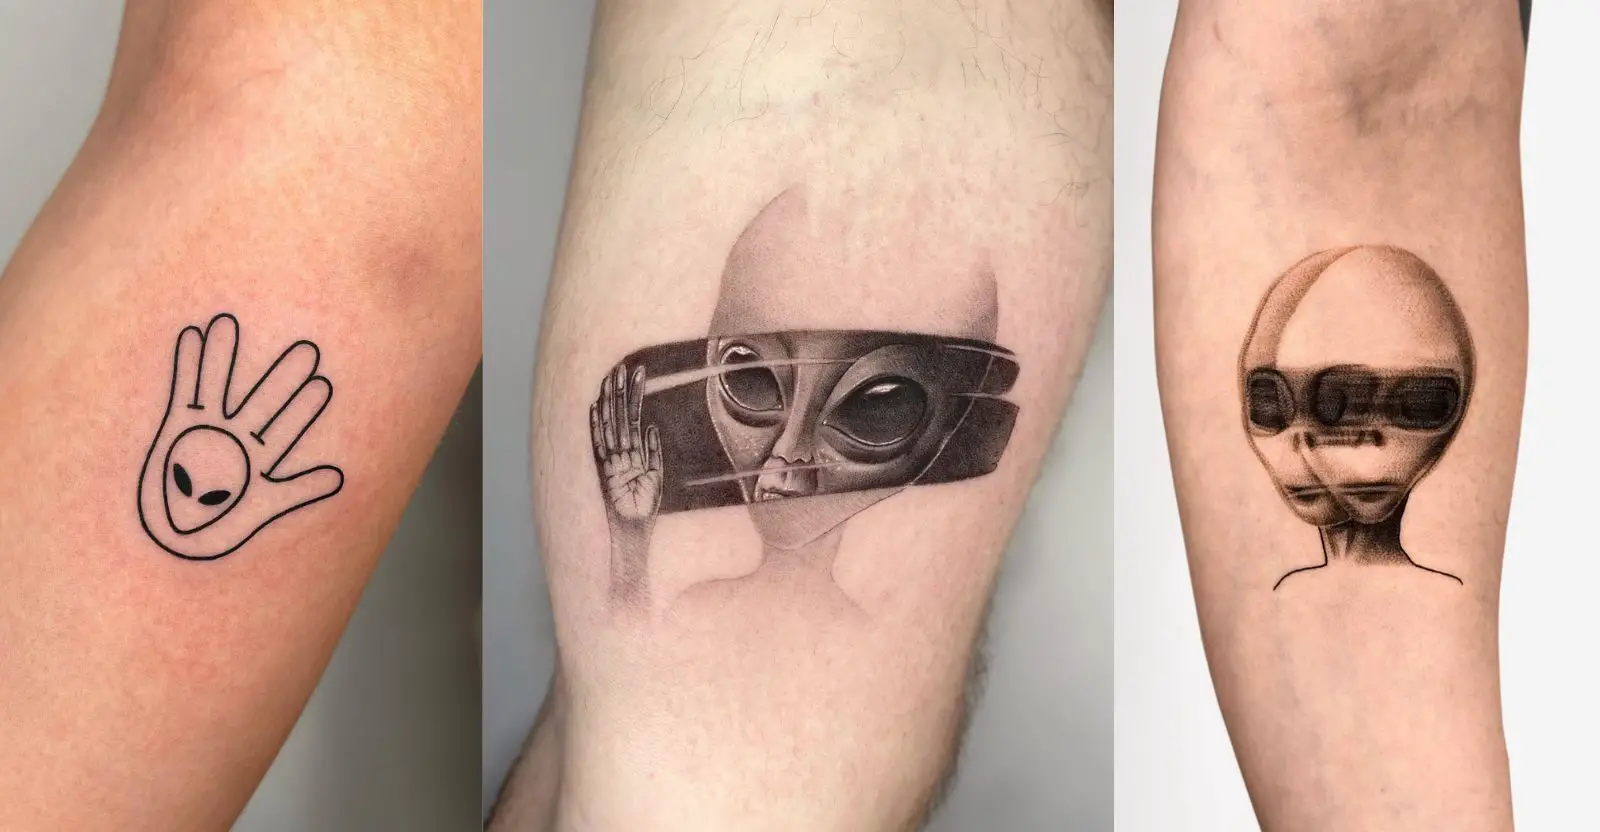 alien tattoo – All Things Tattoo